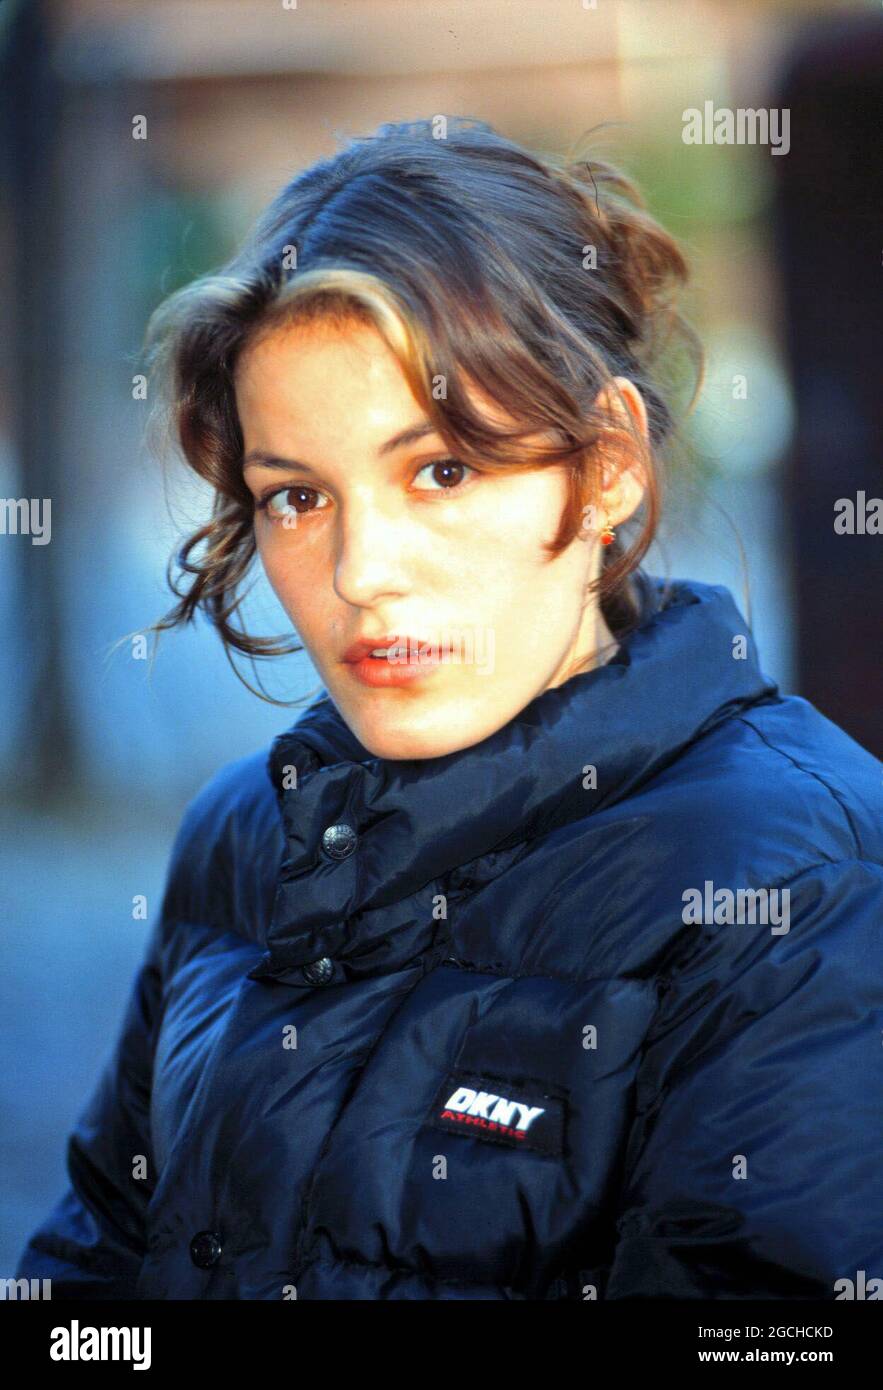 Nicolette Krebitz, deutsche Schauspielerin, Portrait 1995. Nicolette Krebitz, German actress, portrait 1995. Stock Photo